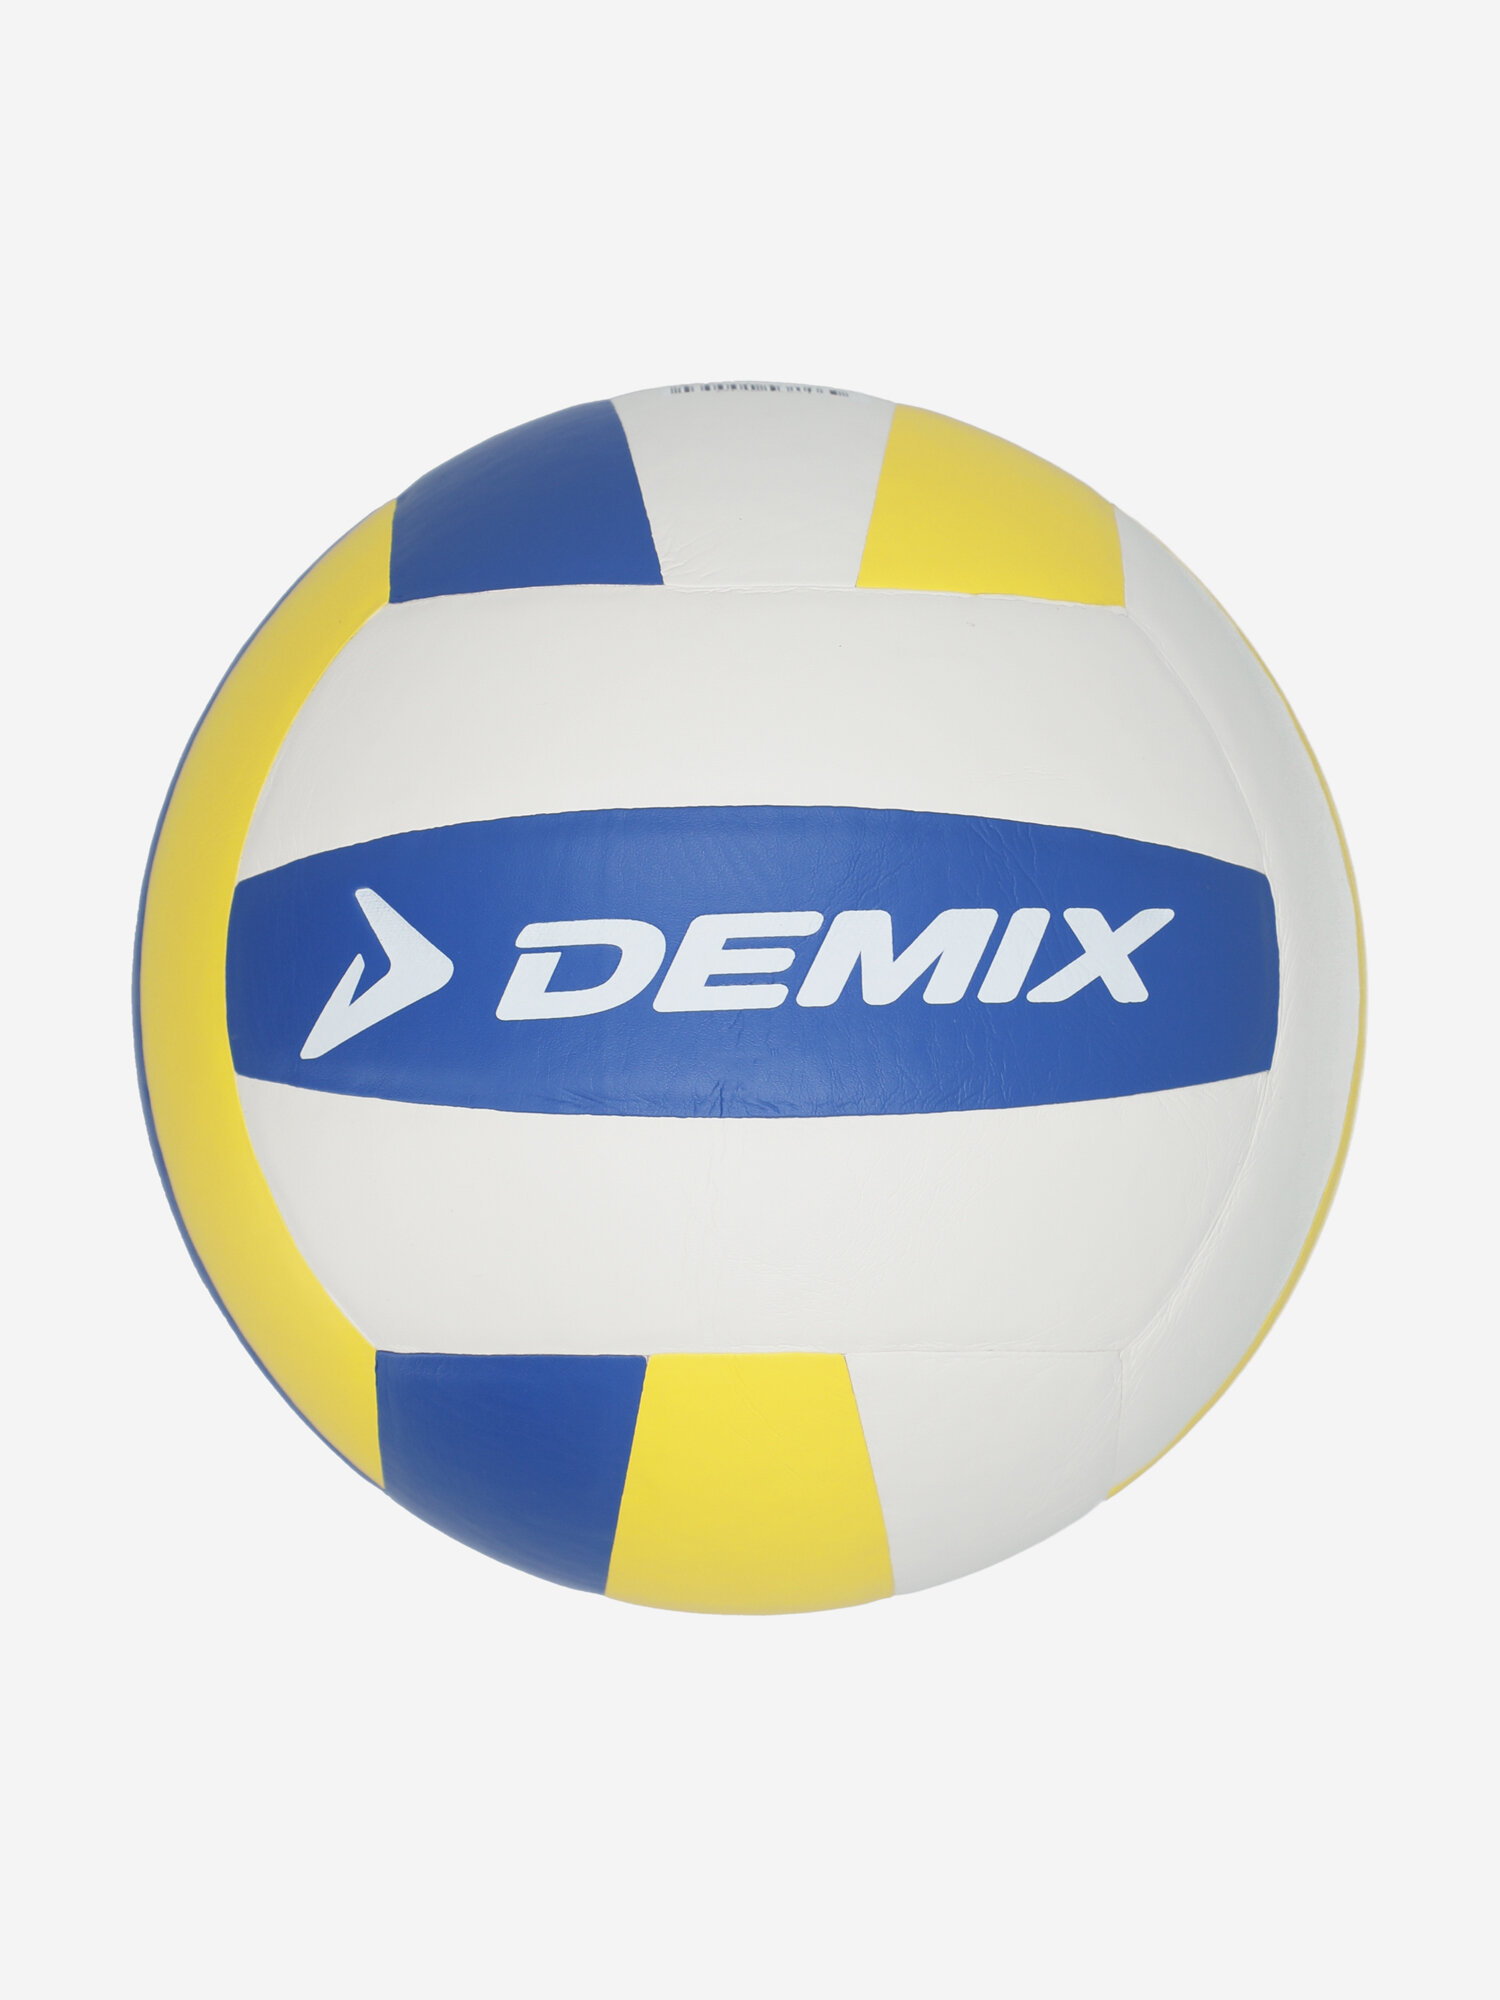 Мяч волейбольный Demix Performance Soft Touch Синий; RU: 5, Ориг: 5